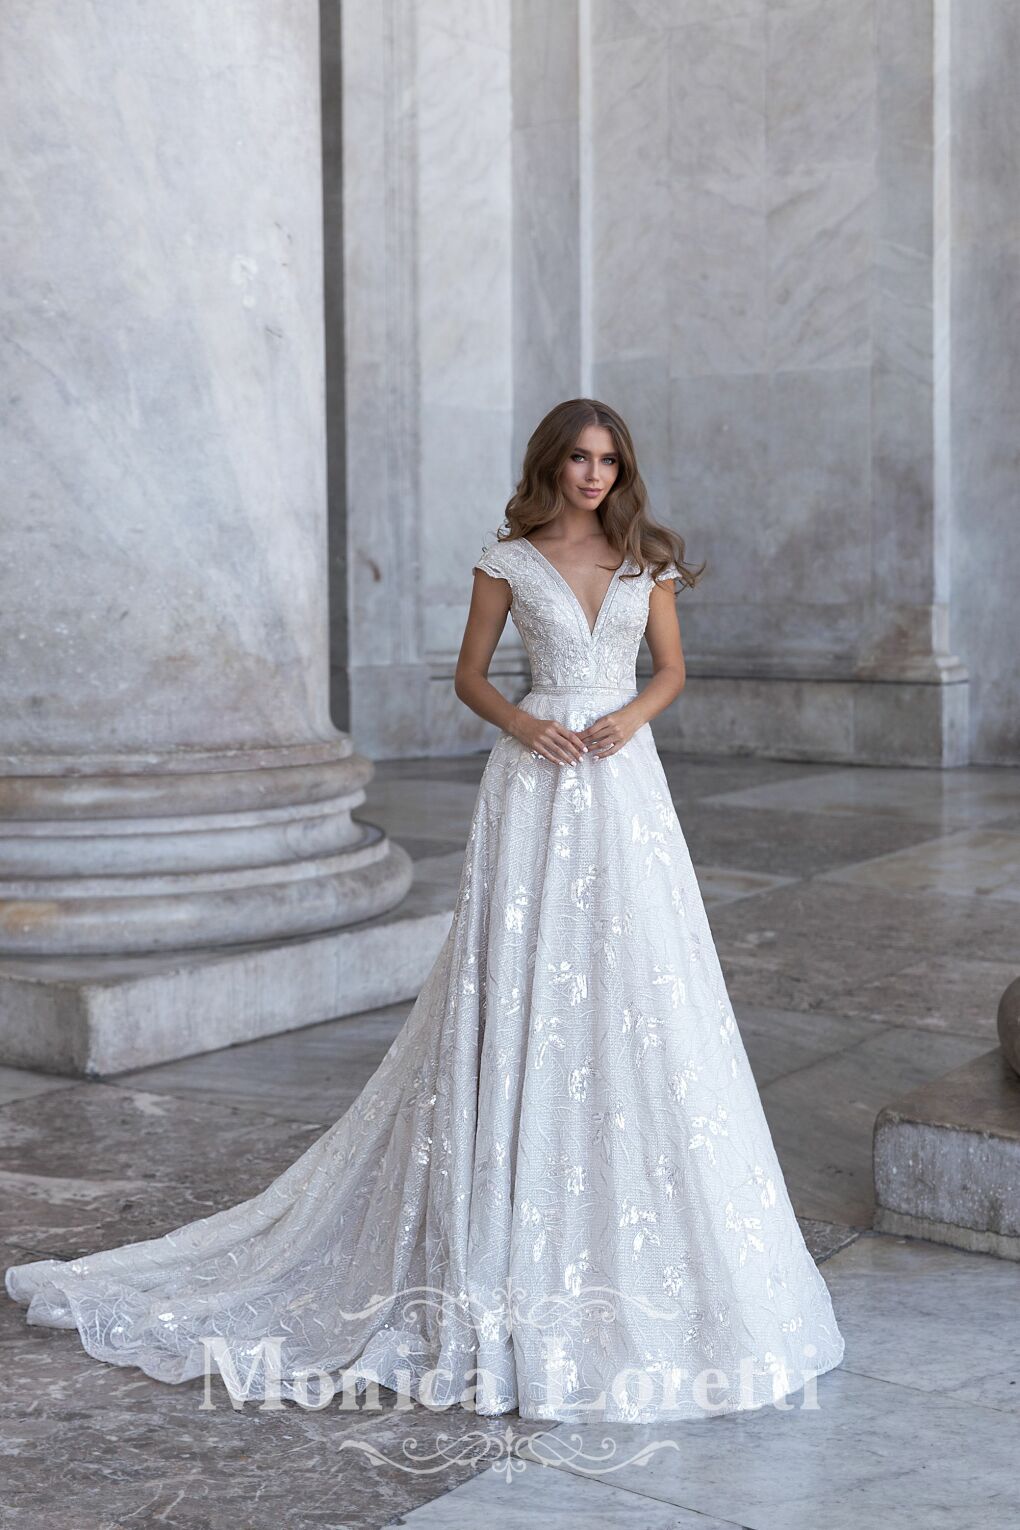 Monica Loretti Prinzessin Braut Hochzeit Kleid